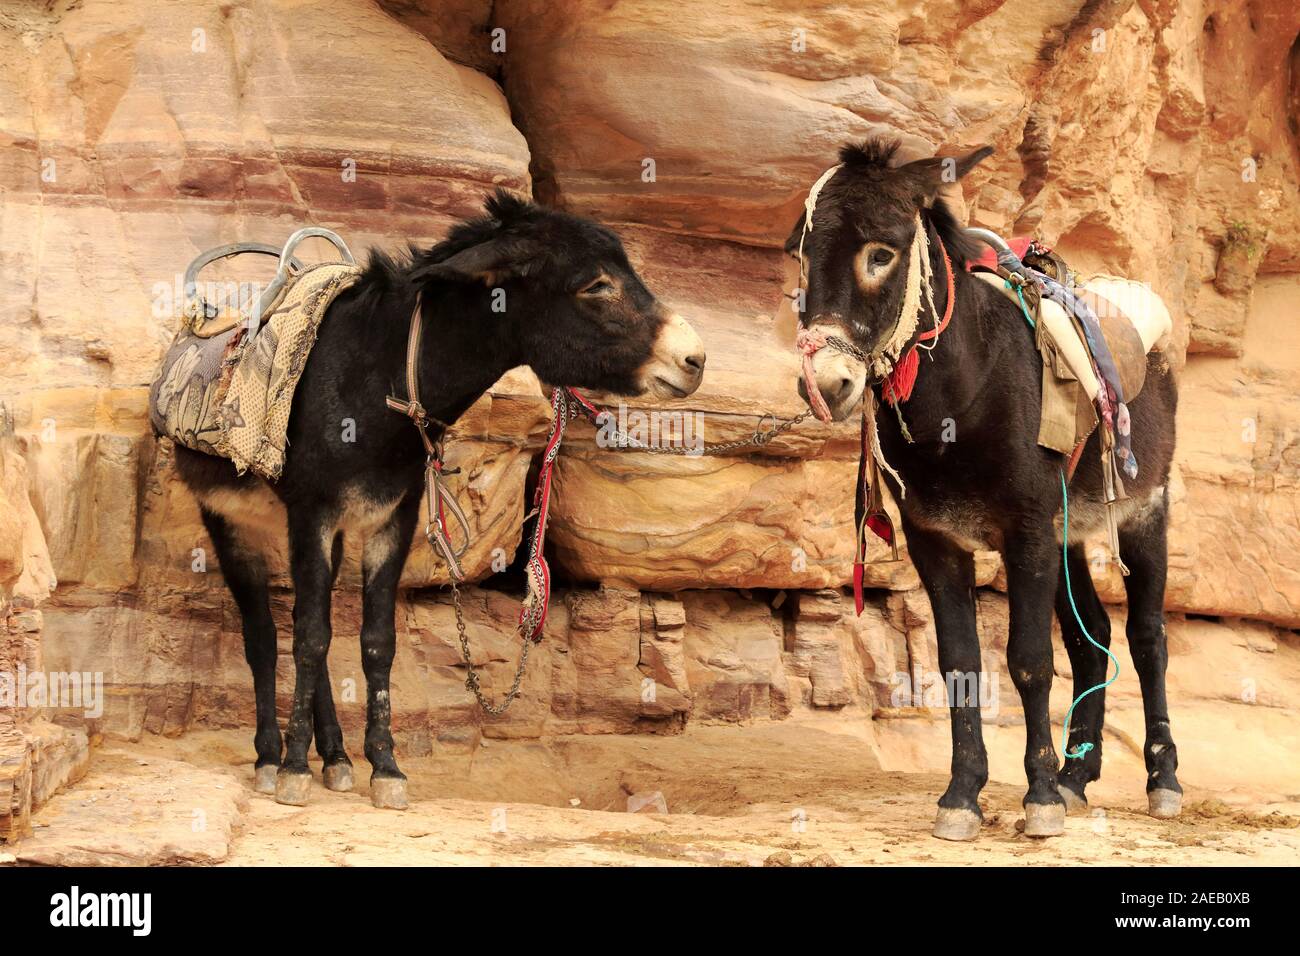 Donkeys in Petra Stock Photo